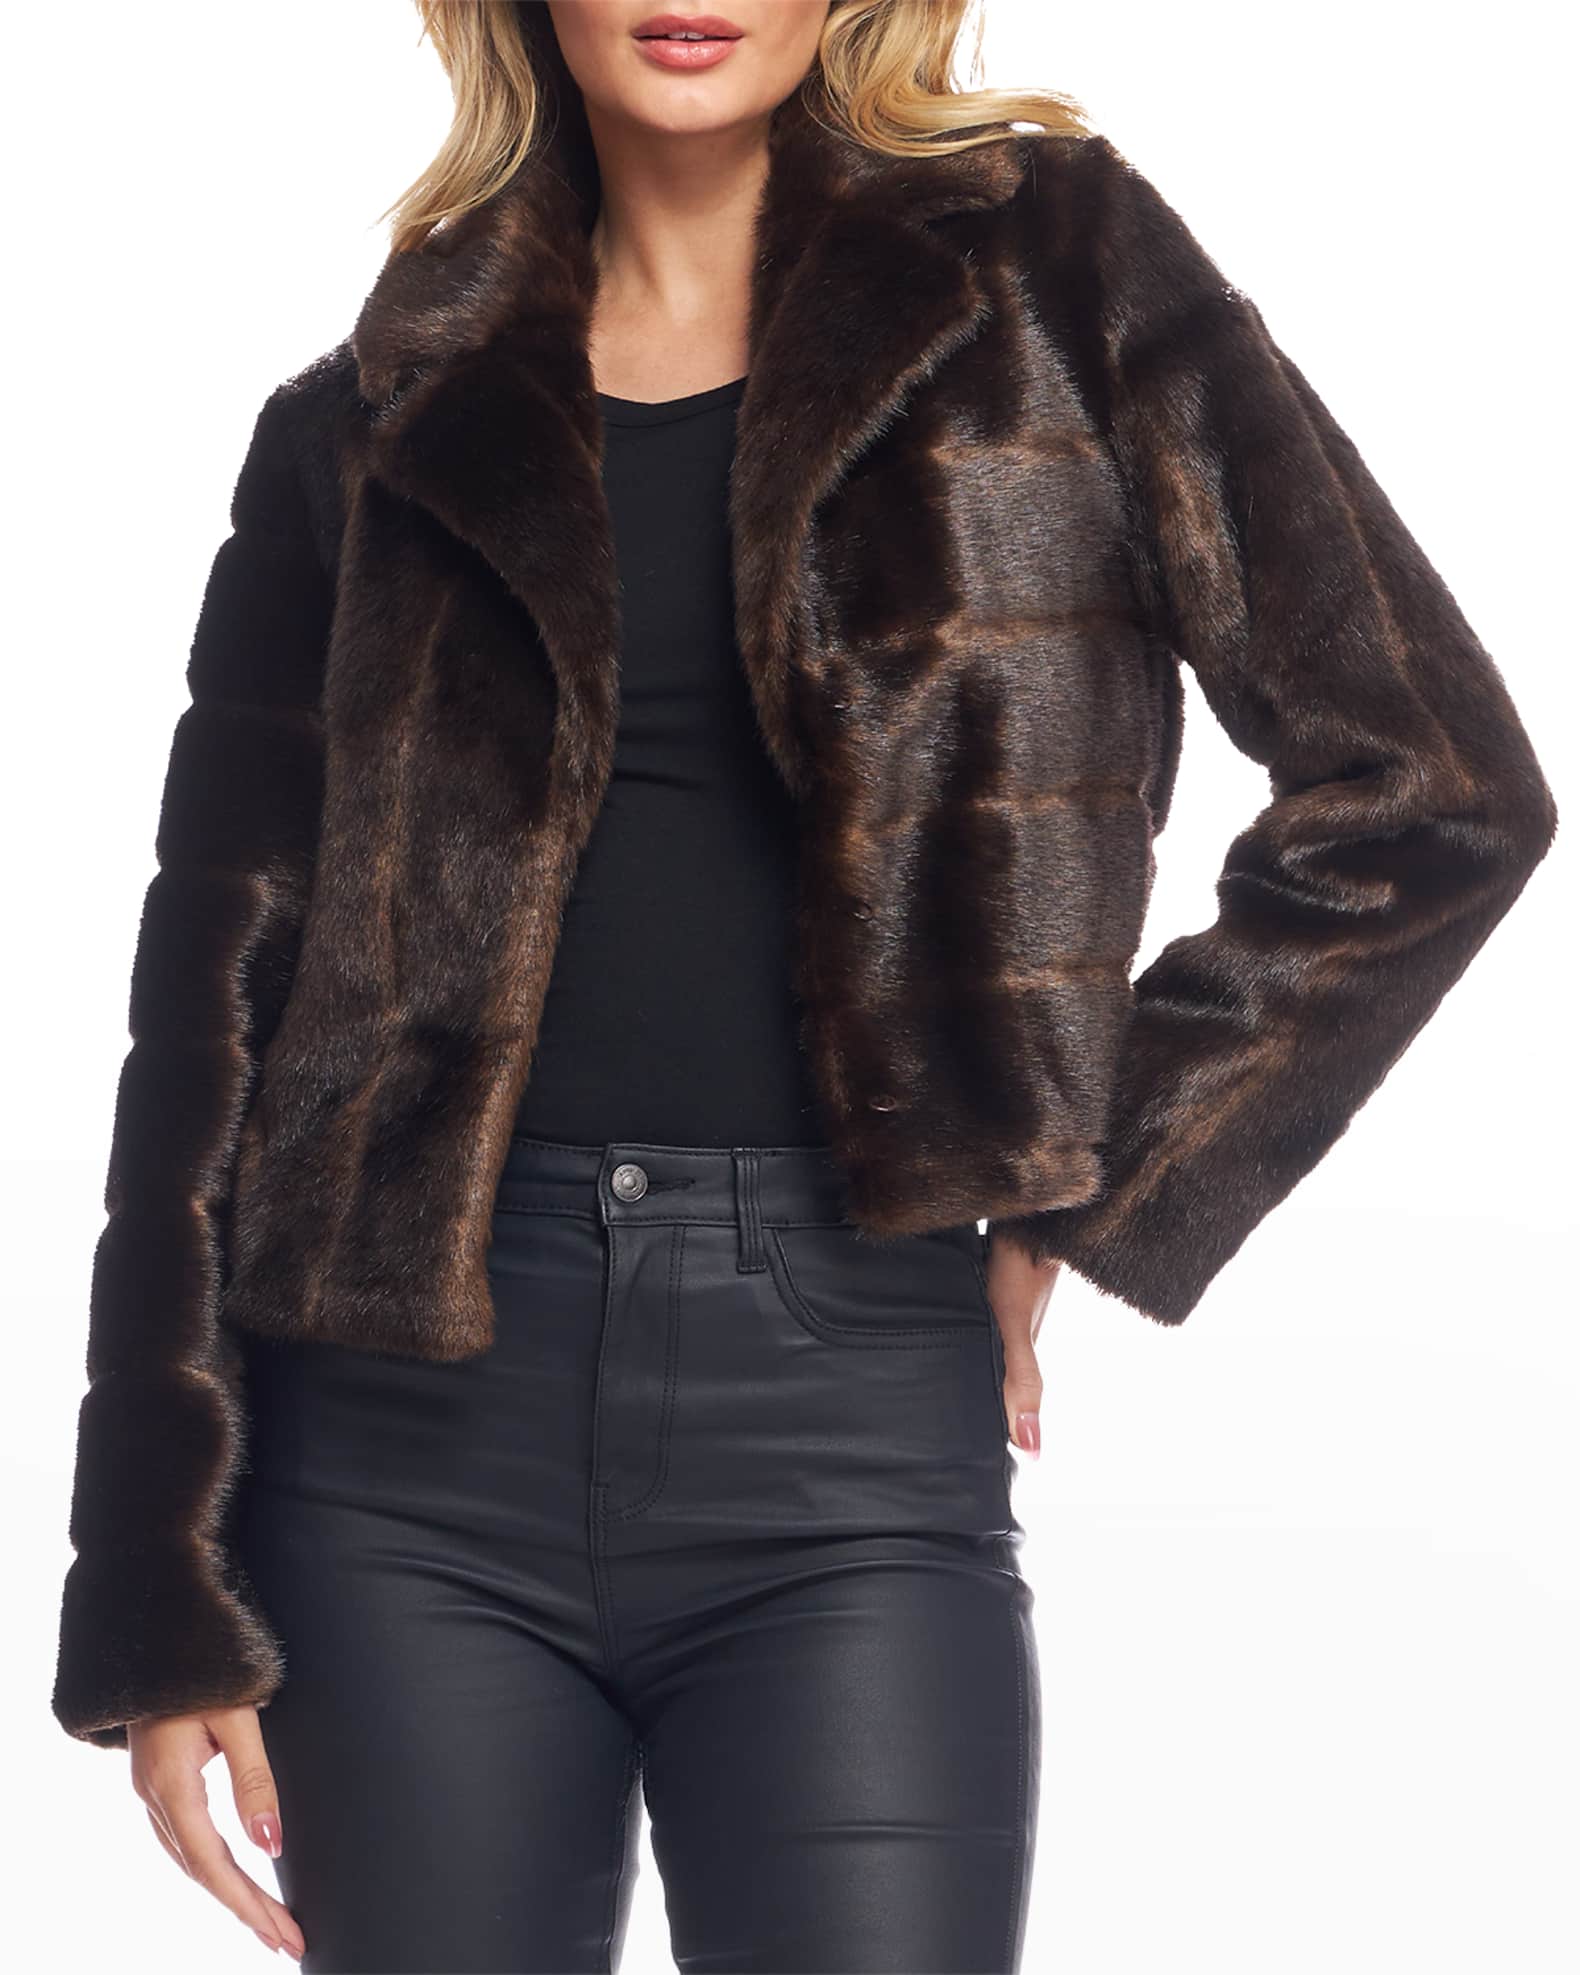 Fabulous Furs Maven Faux Fur Mink Jacket | Neiman Marcus